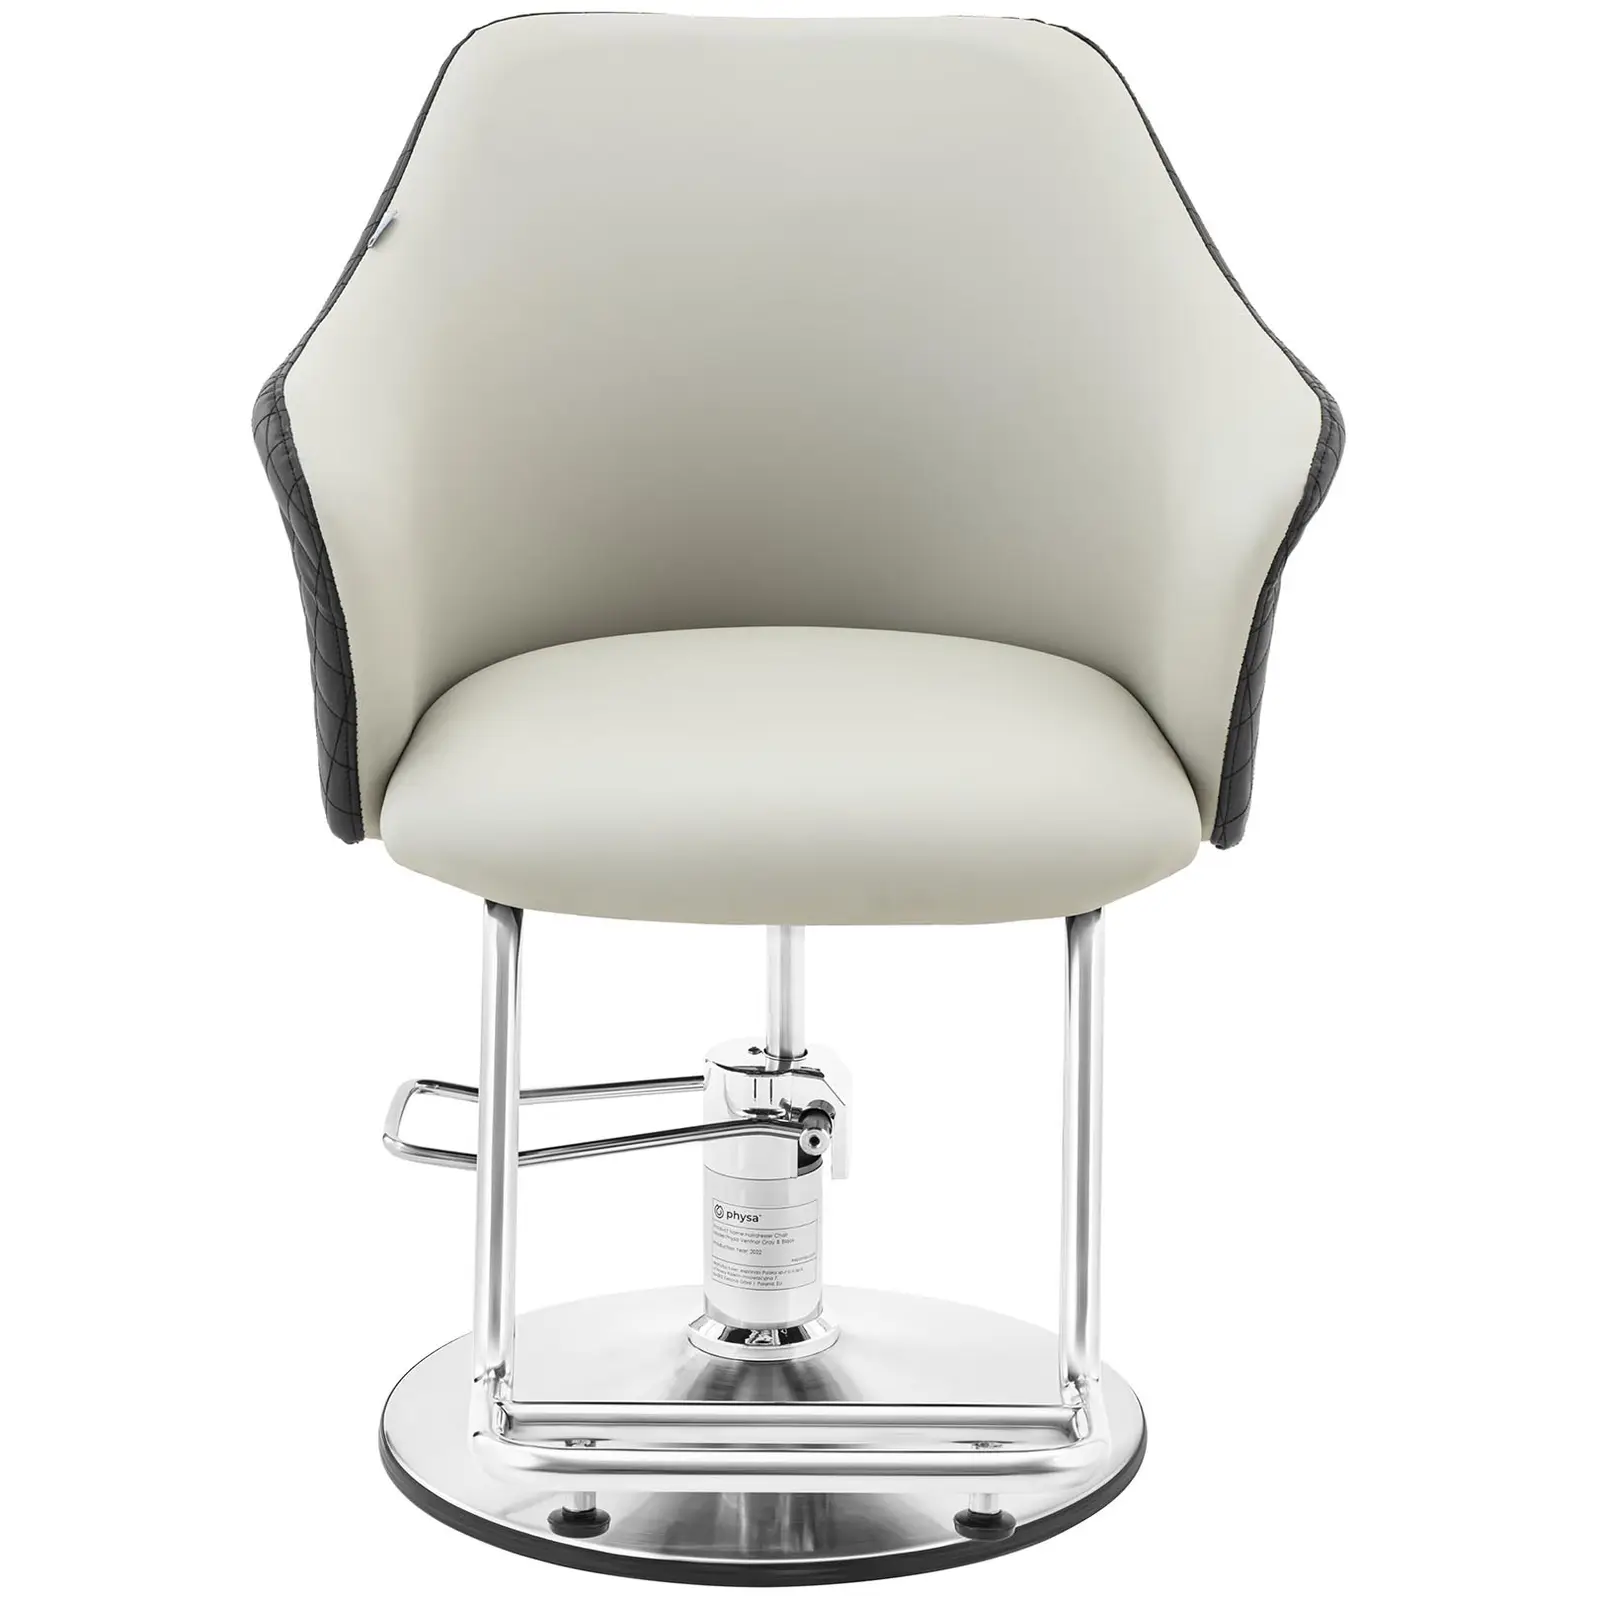 Cadeira de cabeleireiro com apoio para os pés - 890-1040 mm - 200 kg - Preto, Cinza claro, Prata